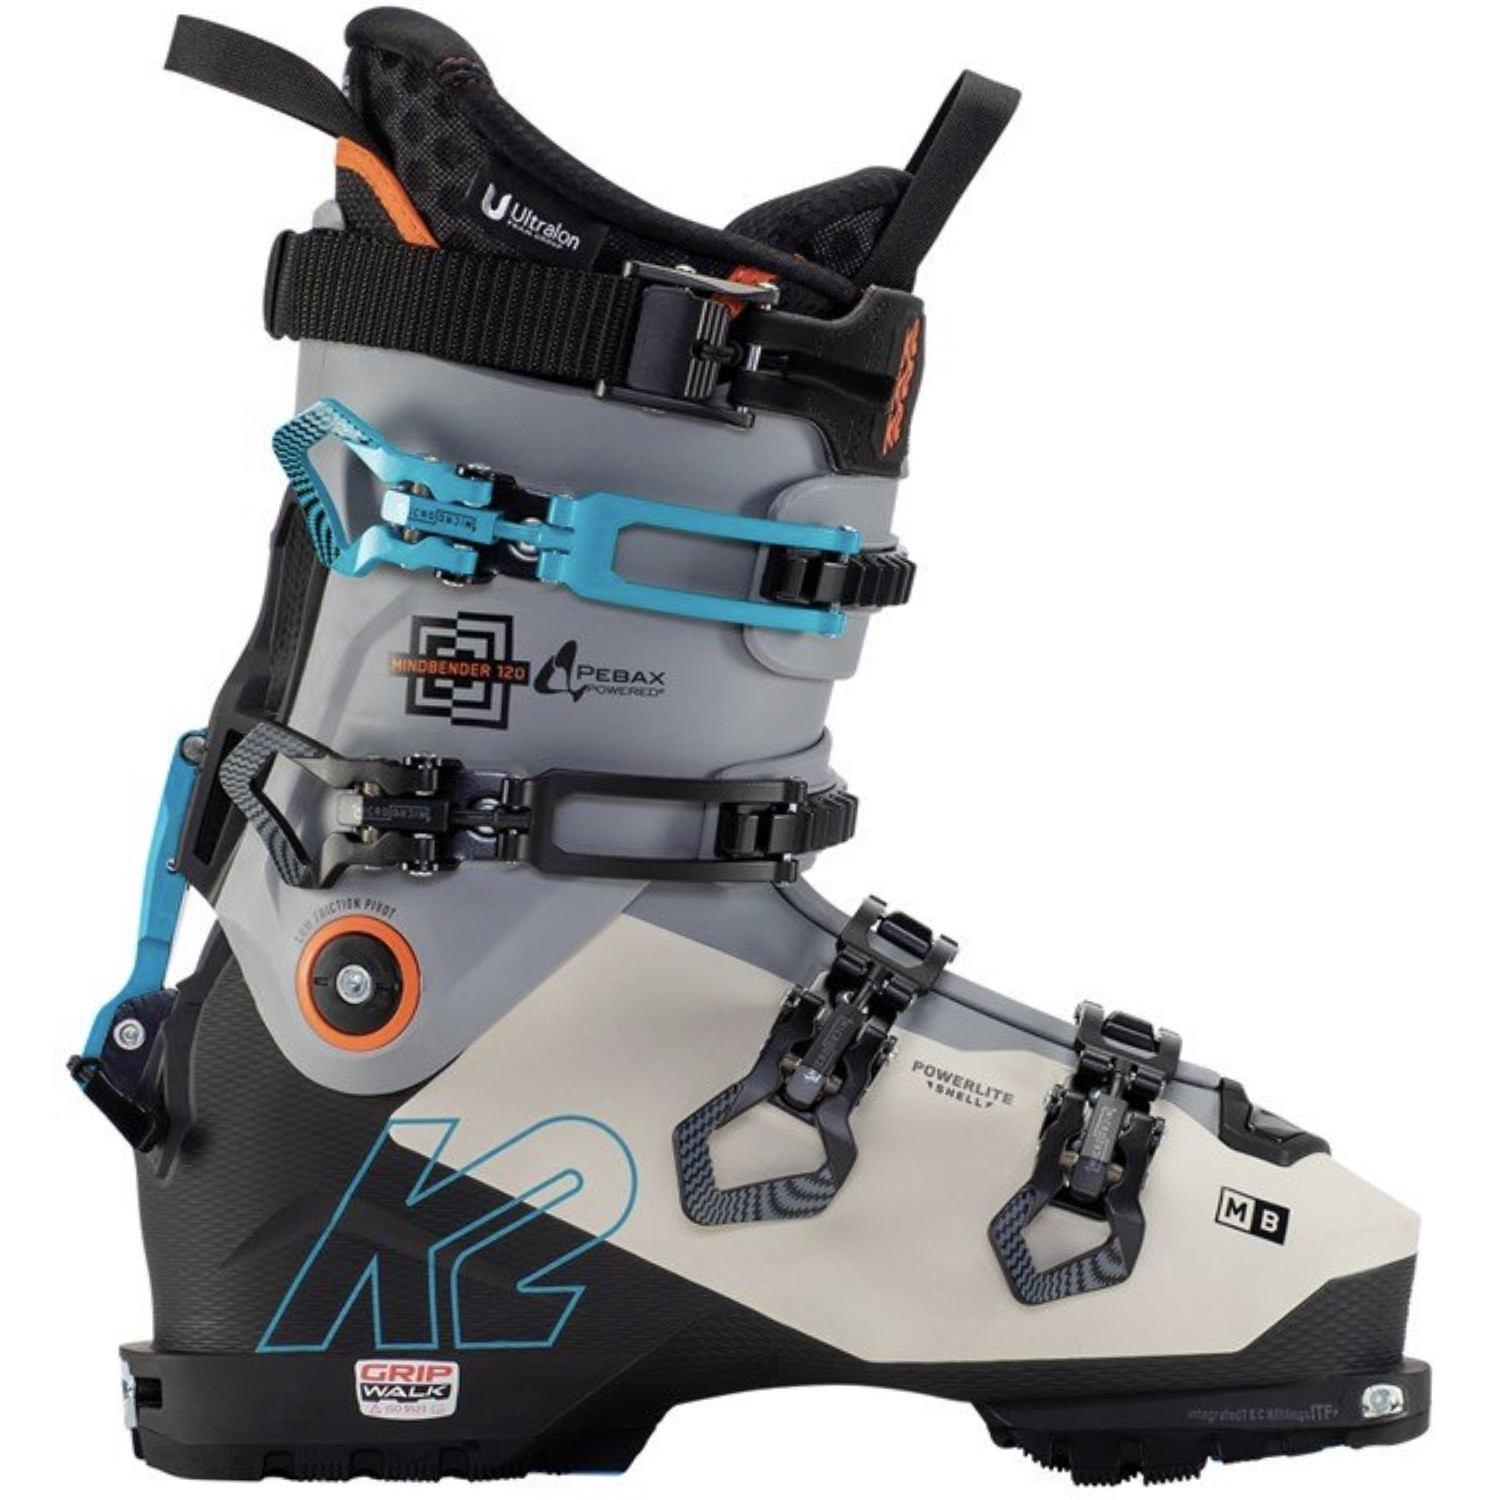 Goot Nauwgezet Beeldhouwwerk K2 Mindbender 120 Ski Boots 2021 | The Ski Monster